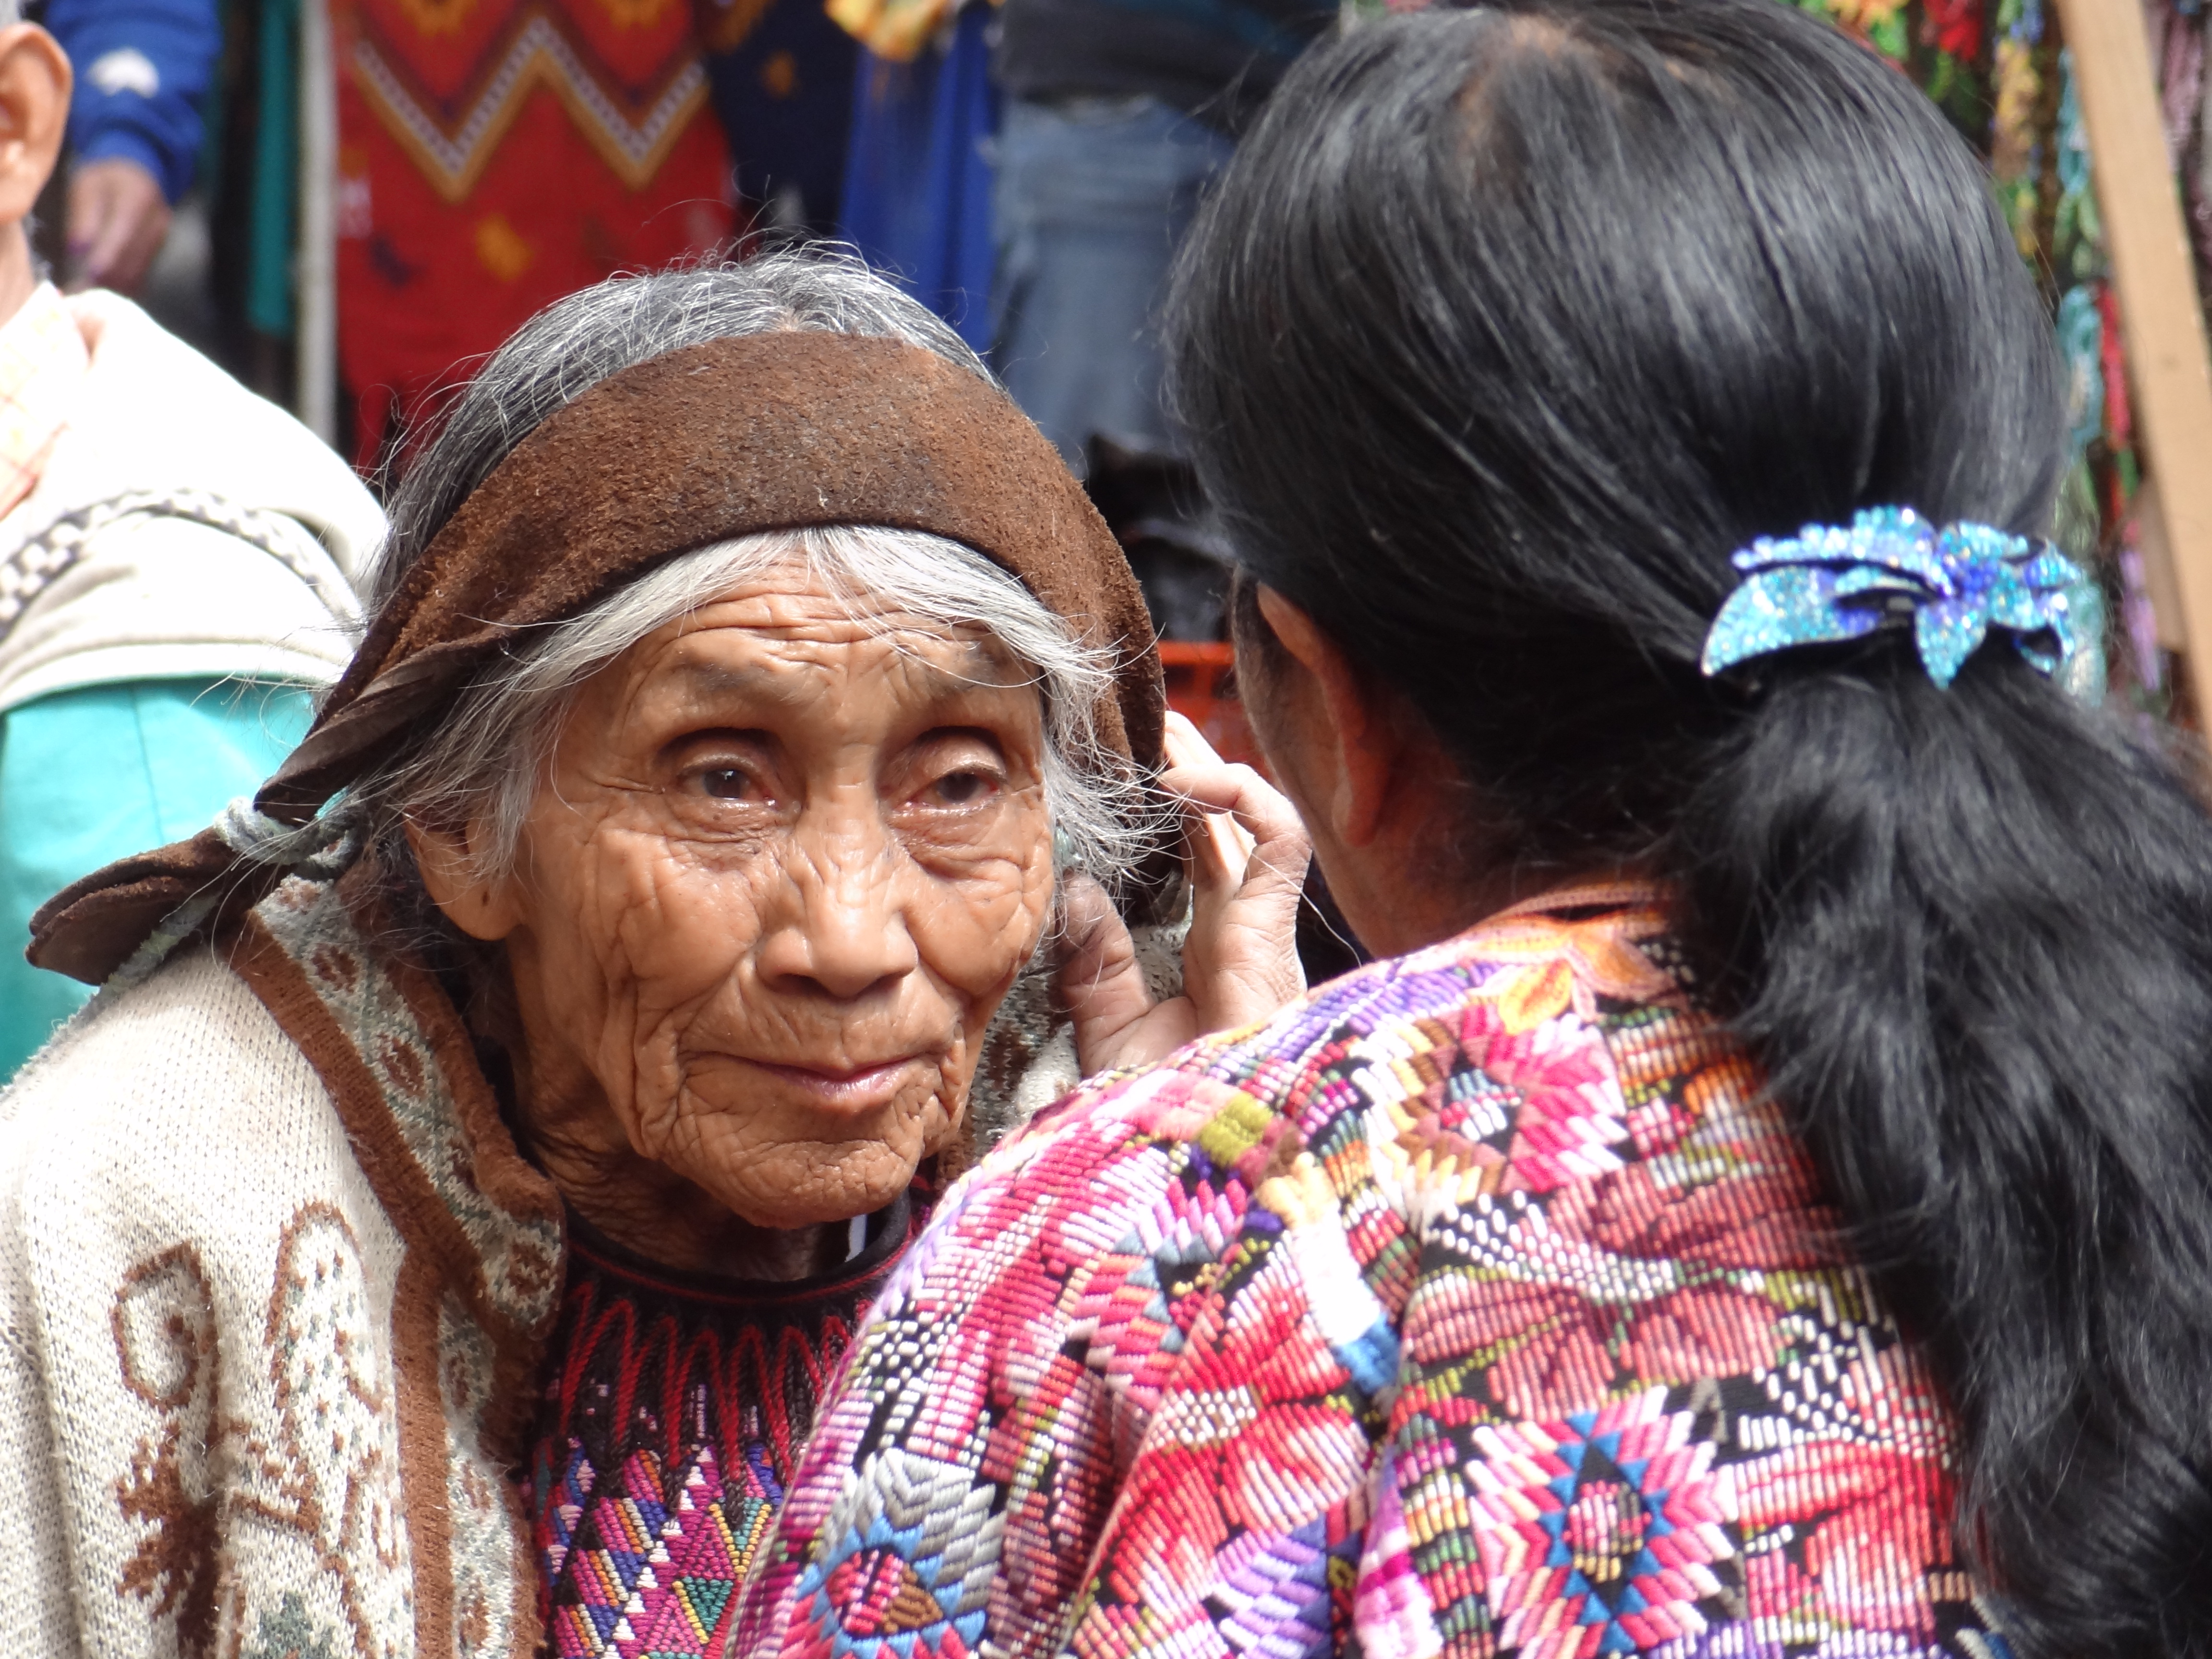 Les photographes pourront prendre de nombreux clichés au marché de Chichicastenango au Guatemala photo blog voyage tour du monde travel https://yoytourdumonde.fr